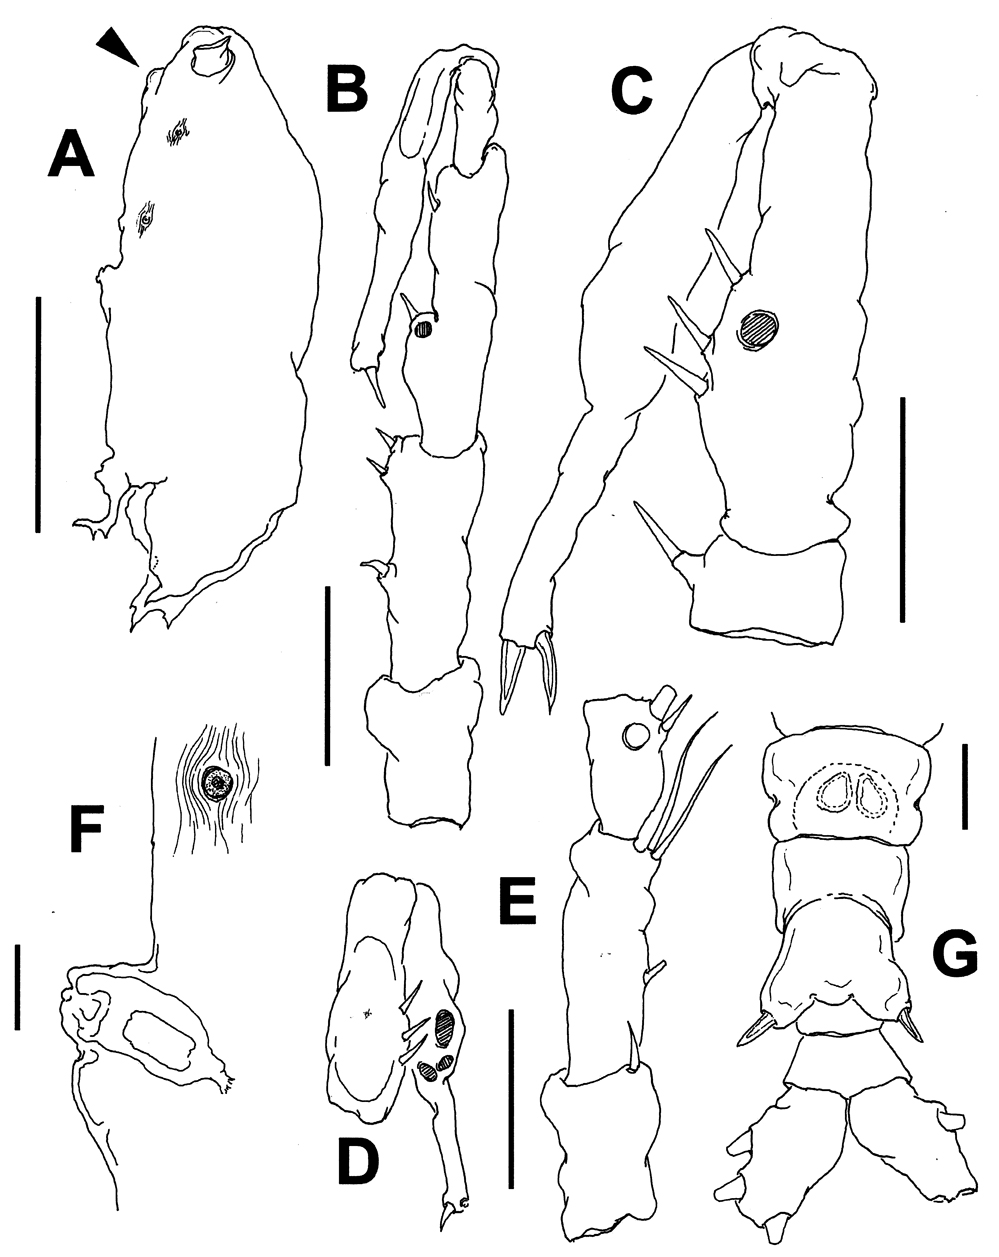 Espce Monstrilla longiremis - Planche 10 de figures morphologiques